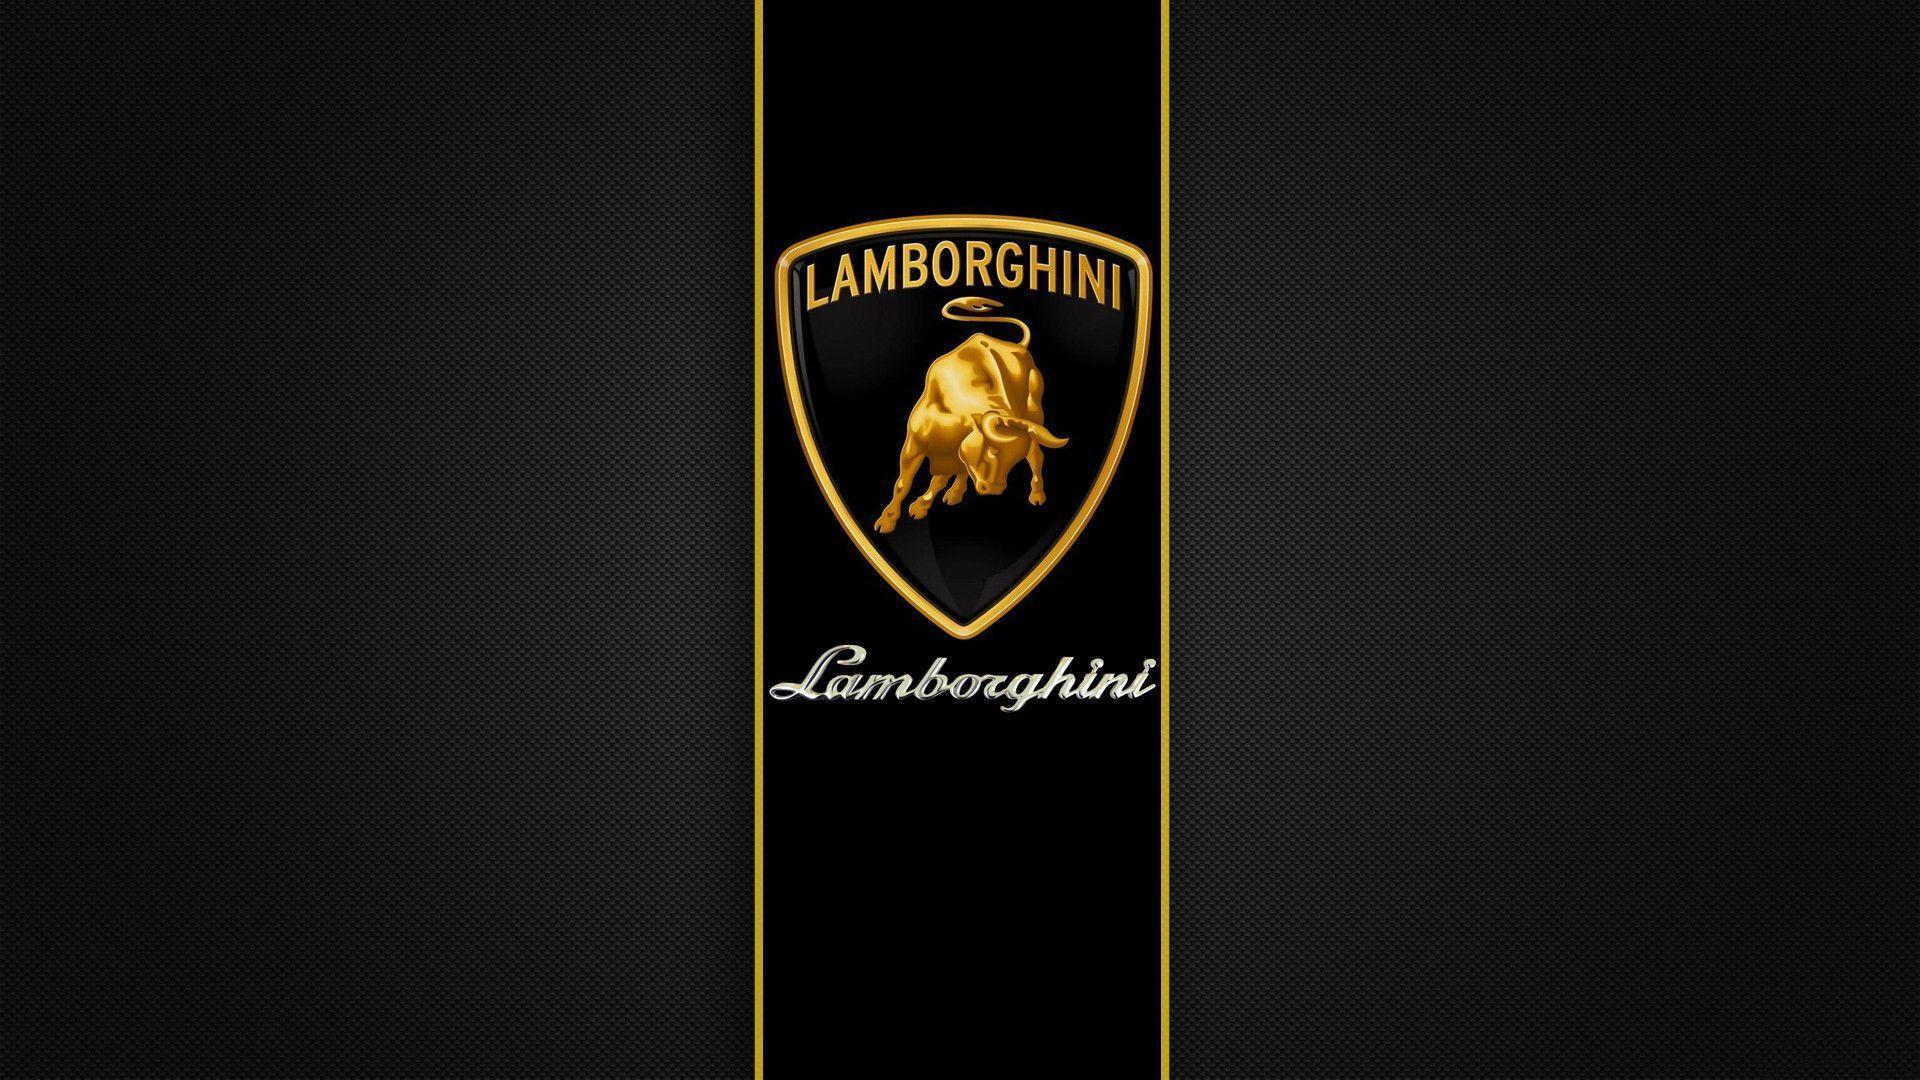 Lamorgini Logo - Lamborghini Logo Wallpapers - Wallpaper Cave